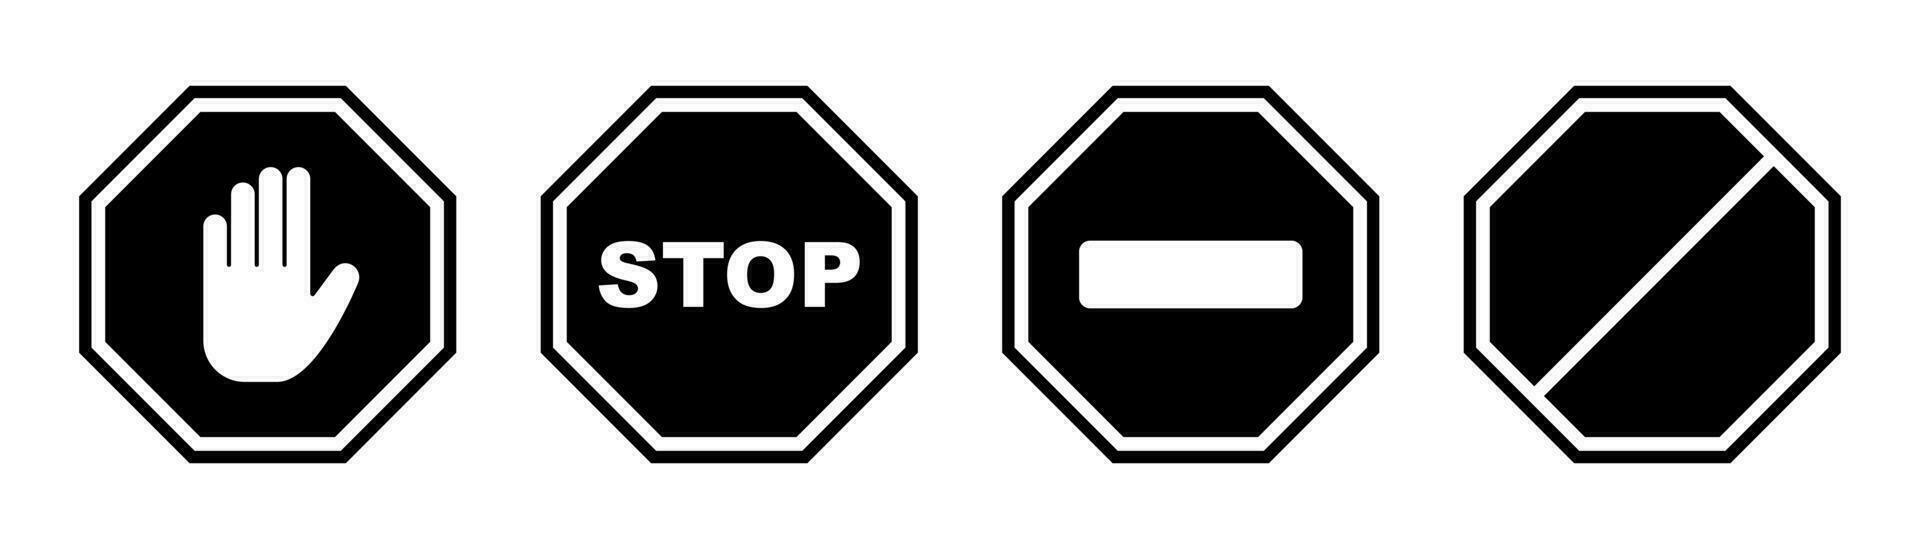 detener signo. negro prohibido símbolo. detener octágono en negro. No entrada signo. restricción mano símbolo. No camino icono. cuadrado detener advertir. valores vector ilustración